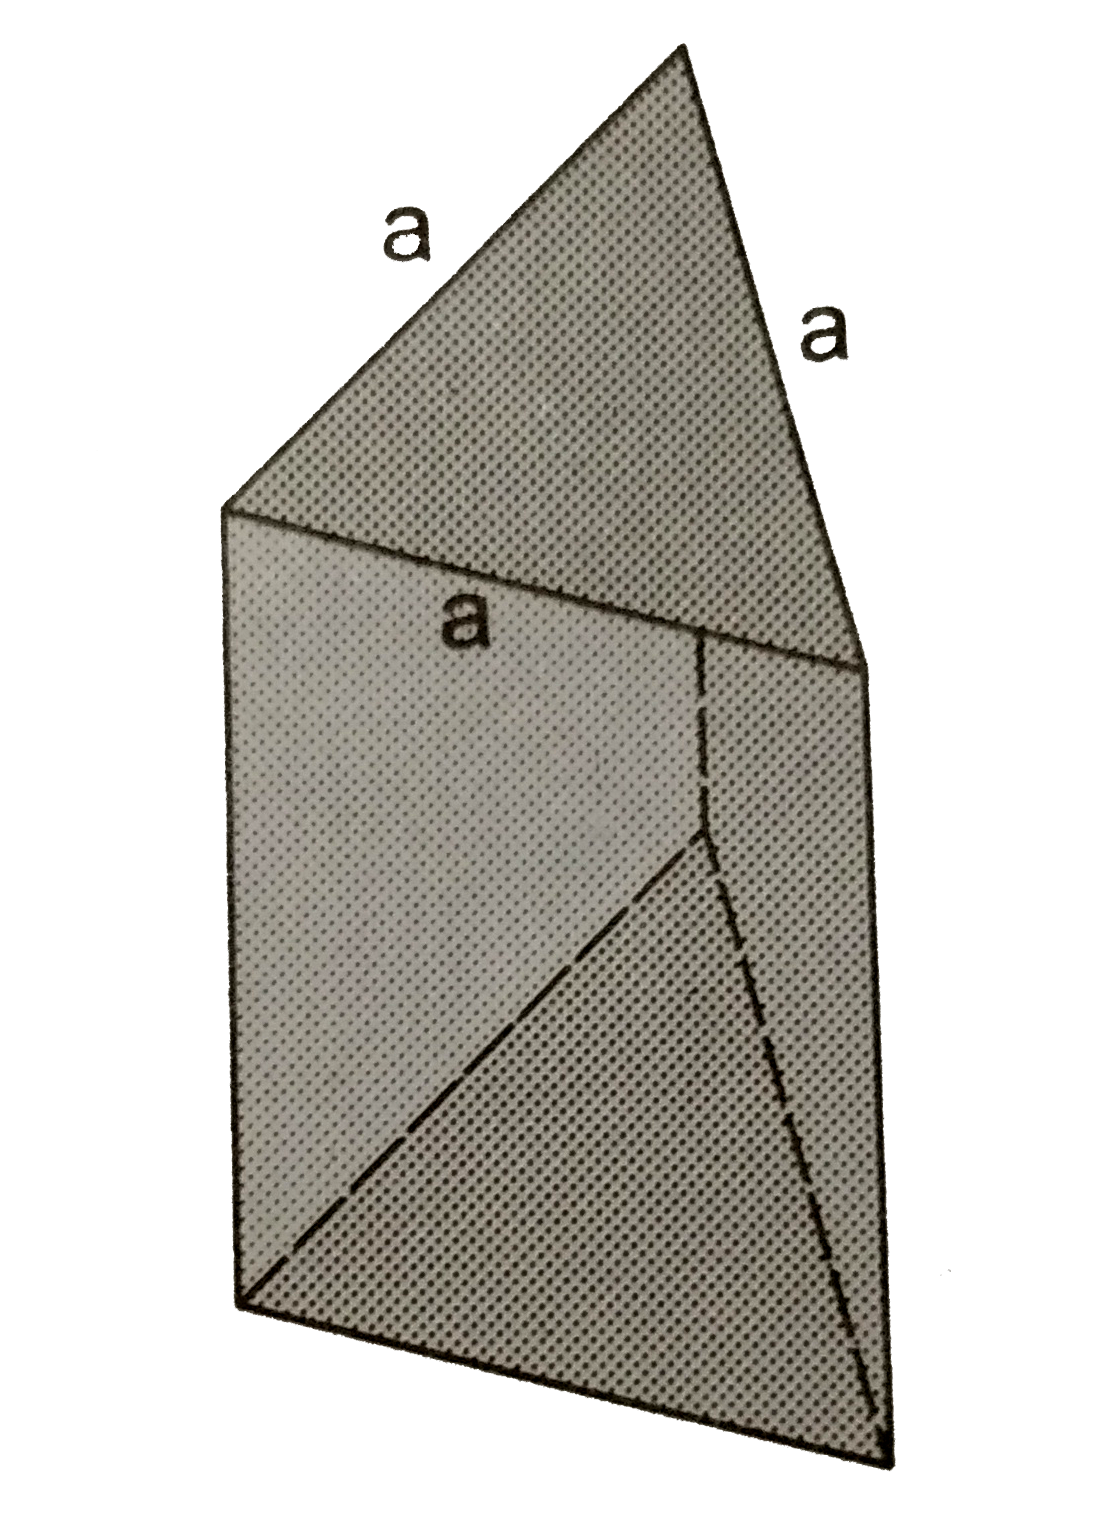 काँच के एक प्रिज़्म का M द्रव्यमान तथा h ऊँचाई है । प्रिज्म का अनुप्रस्थ काट समबाहु त्रिभुज के आकार का है  जिसकी भुजा a है । प्रिज्म के किसी खड़े किनारे (edge) के प्रति इसका जड़त्व आघूर्ण ज्ञात करें ।